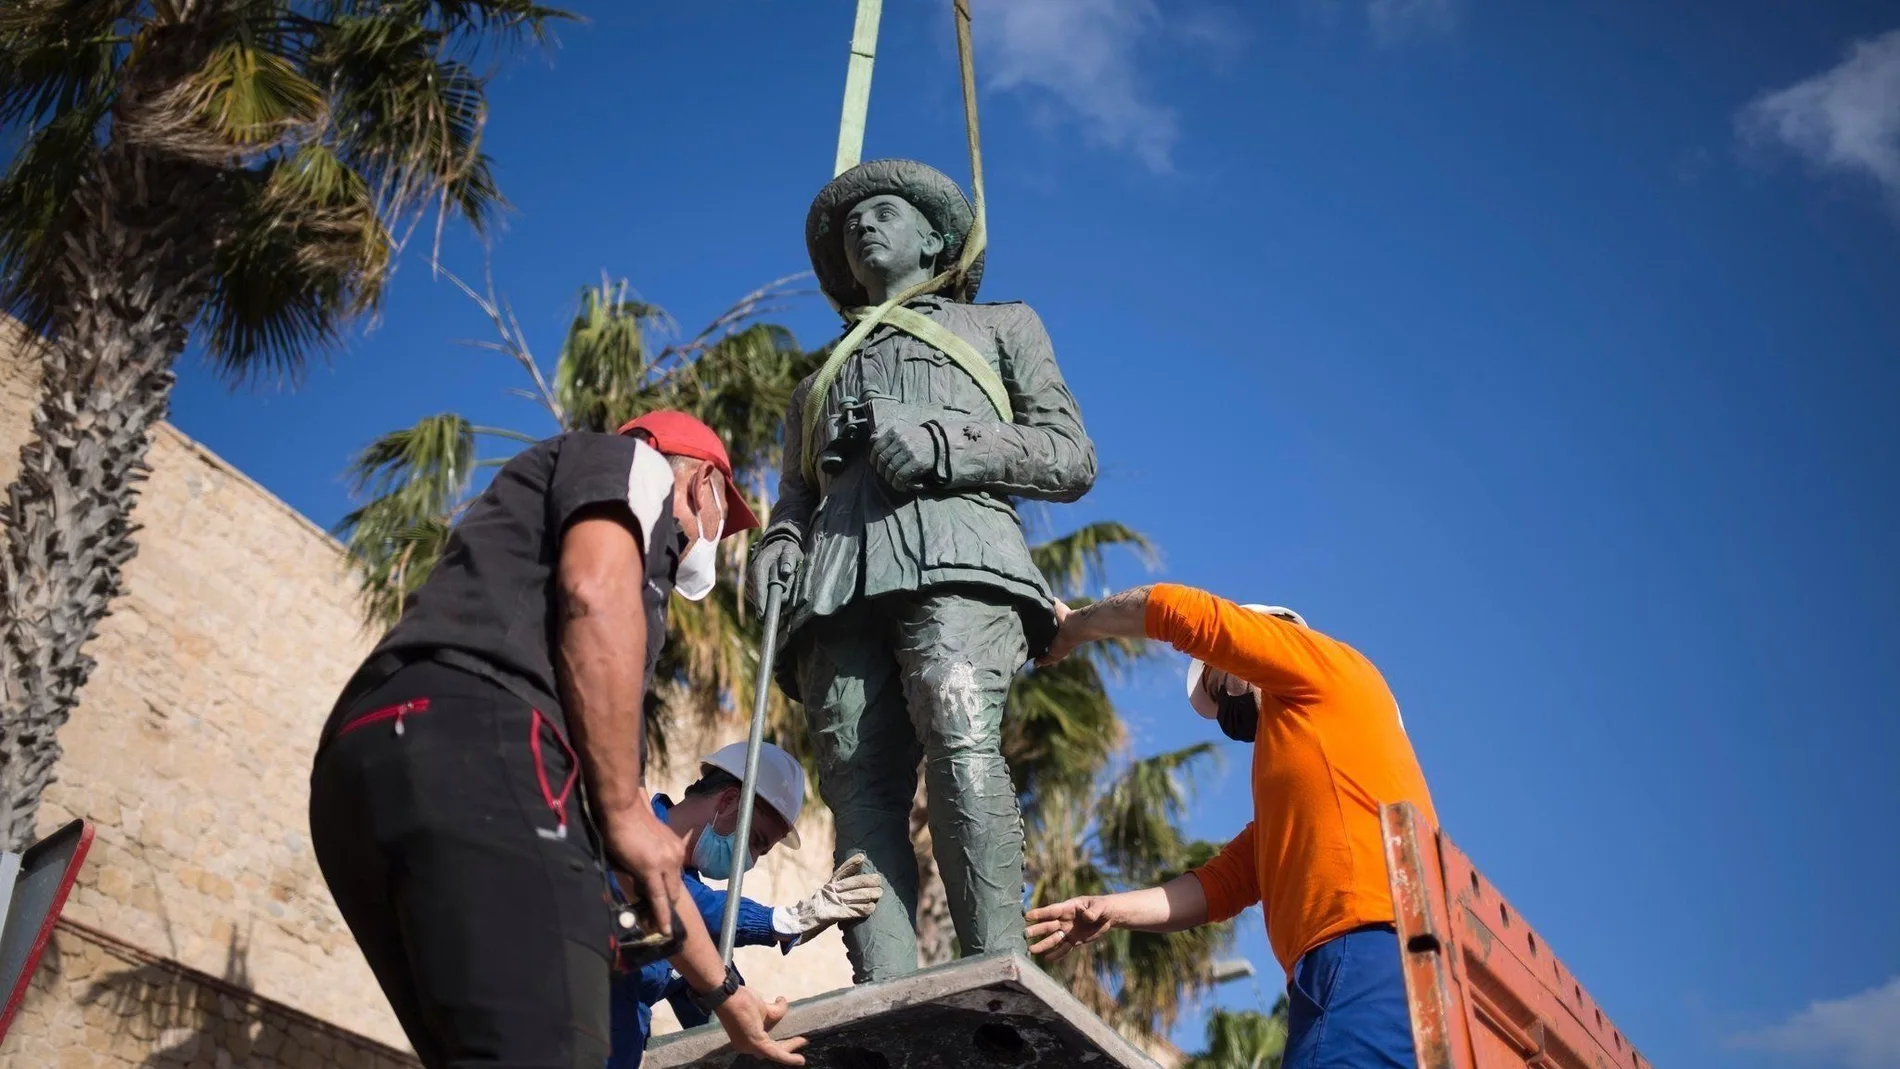 Operarios proceden a retirar la estatua dedicada al "comandante Francisco Franco" situada ante la muralla de Melilla La Vieja